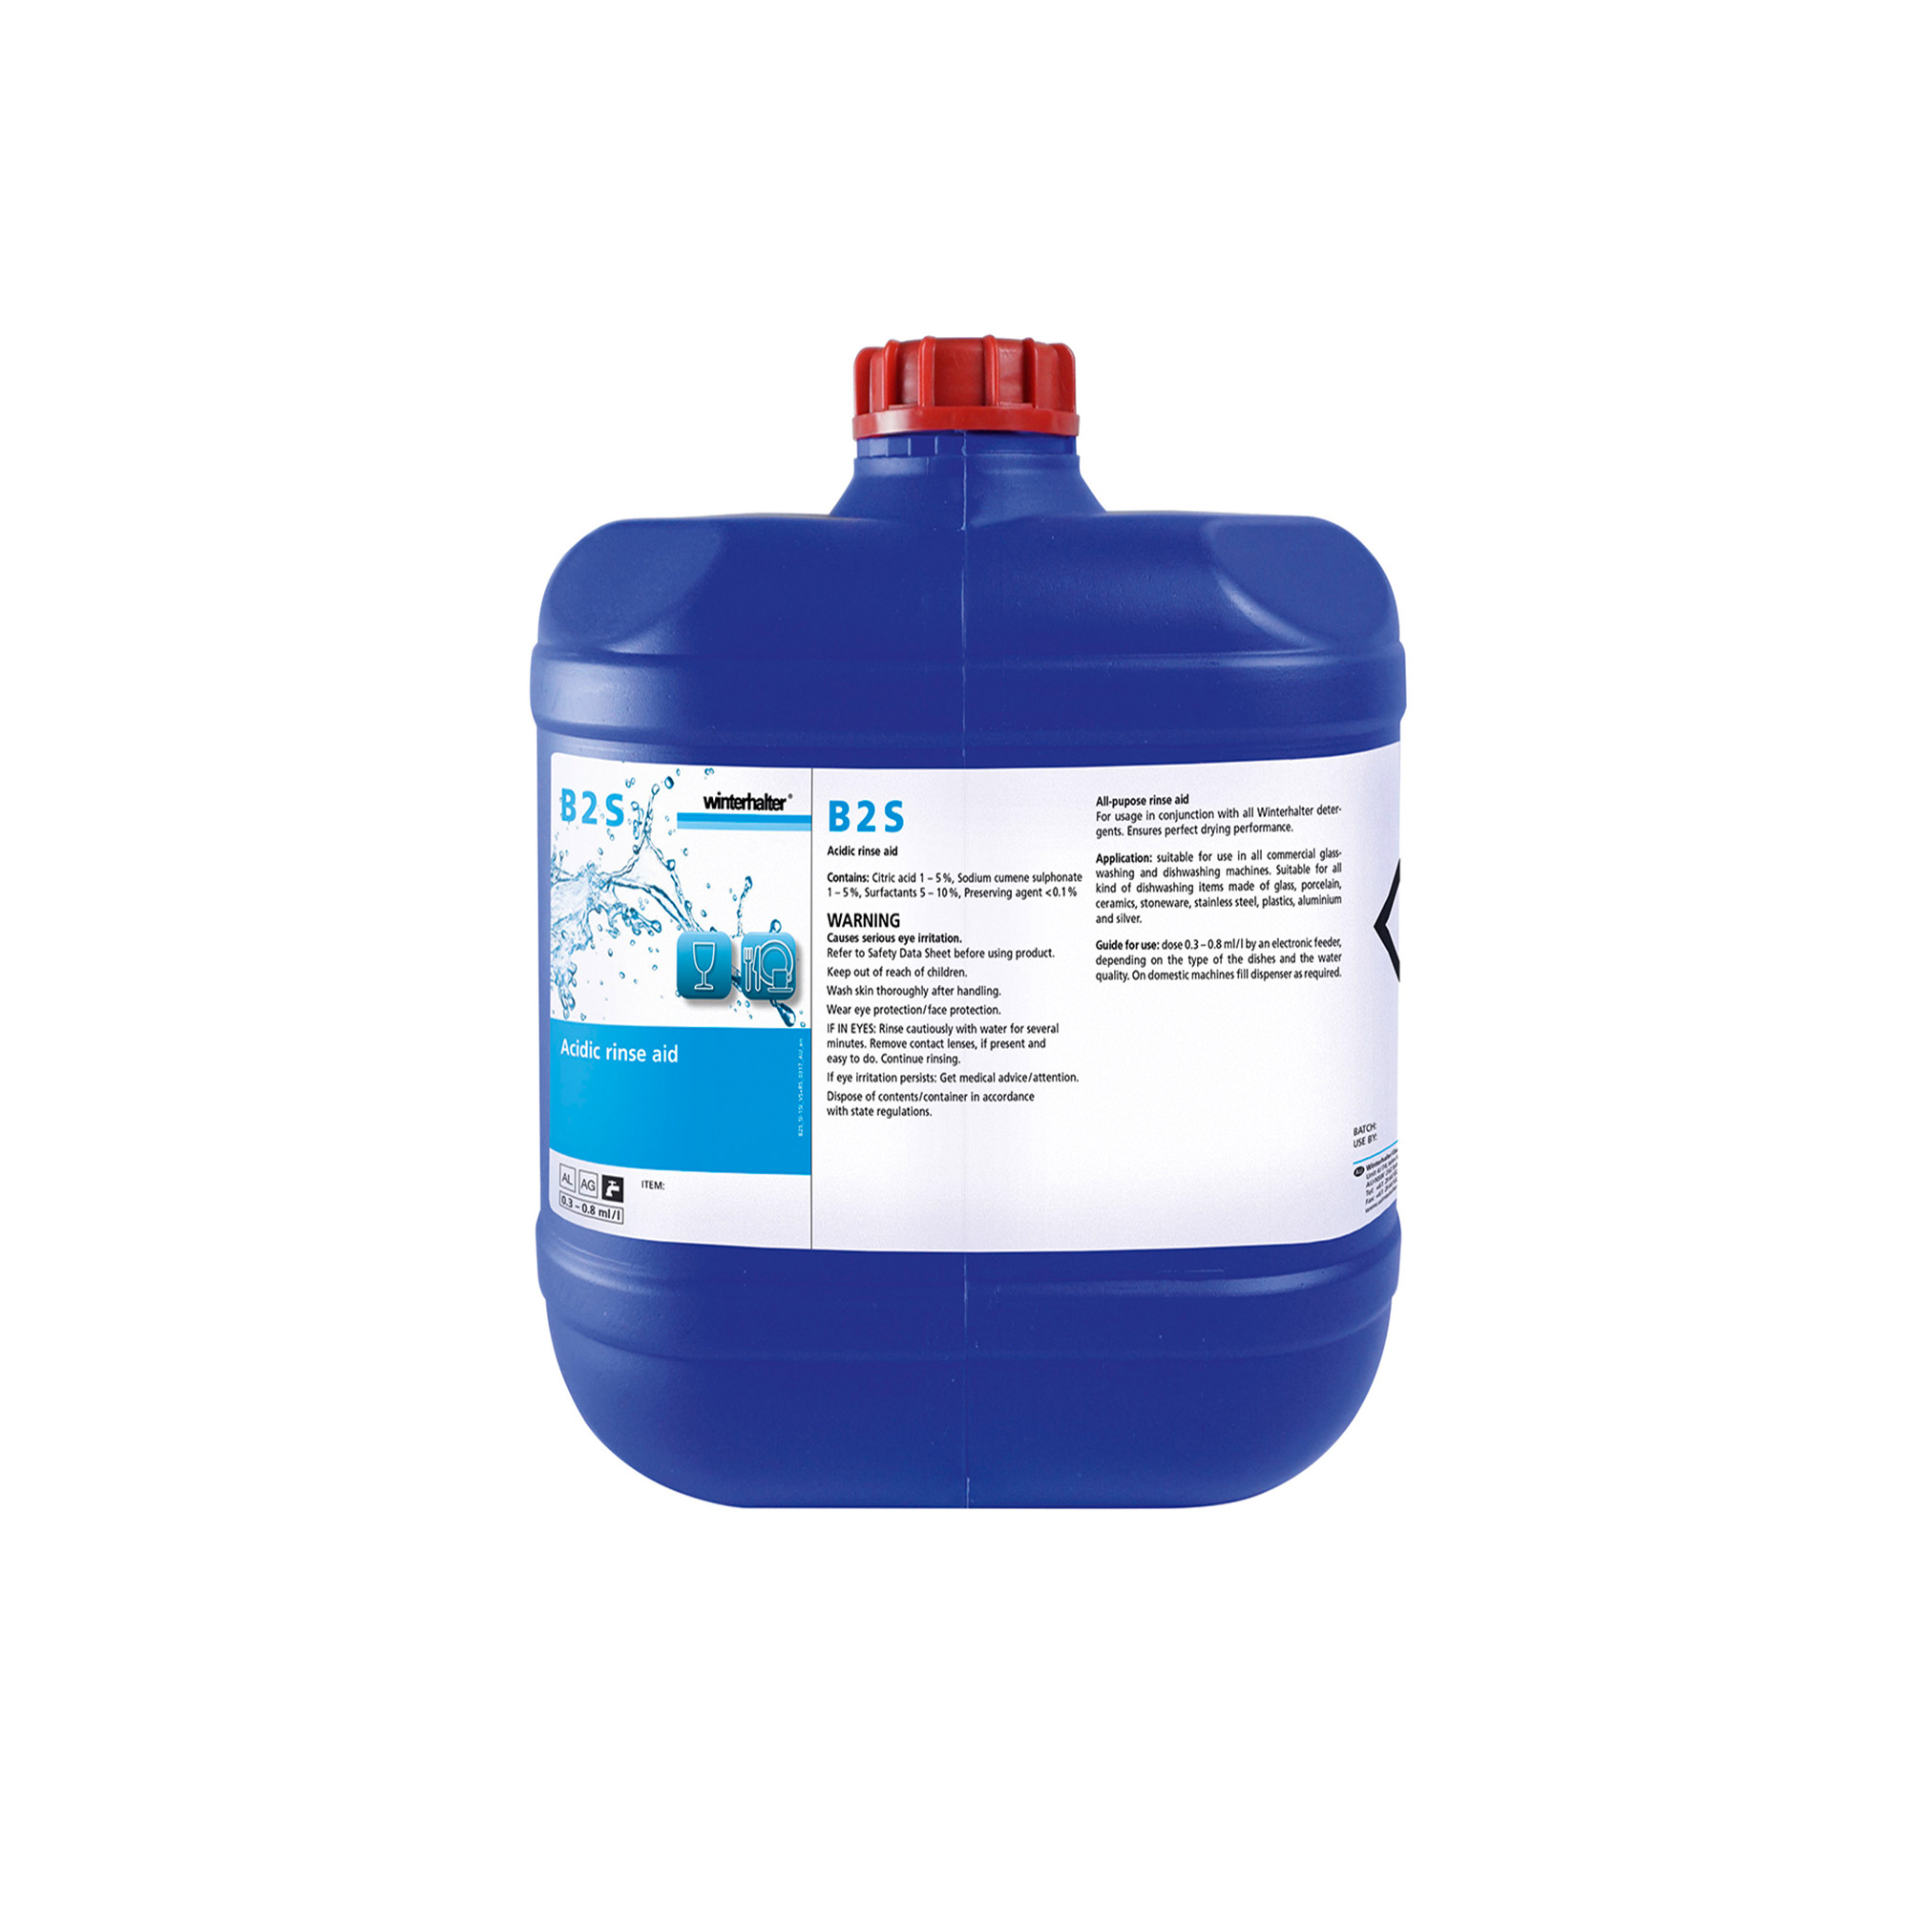 Winterhalter B2S Universal Liquid Glass & Dishwashing Rinse Aid 15 Litre